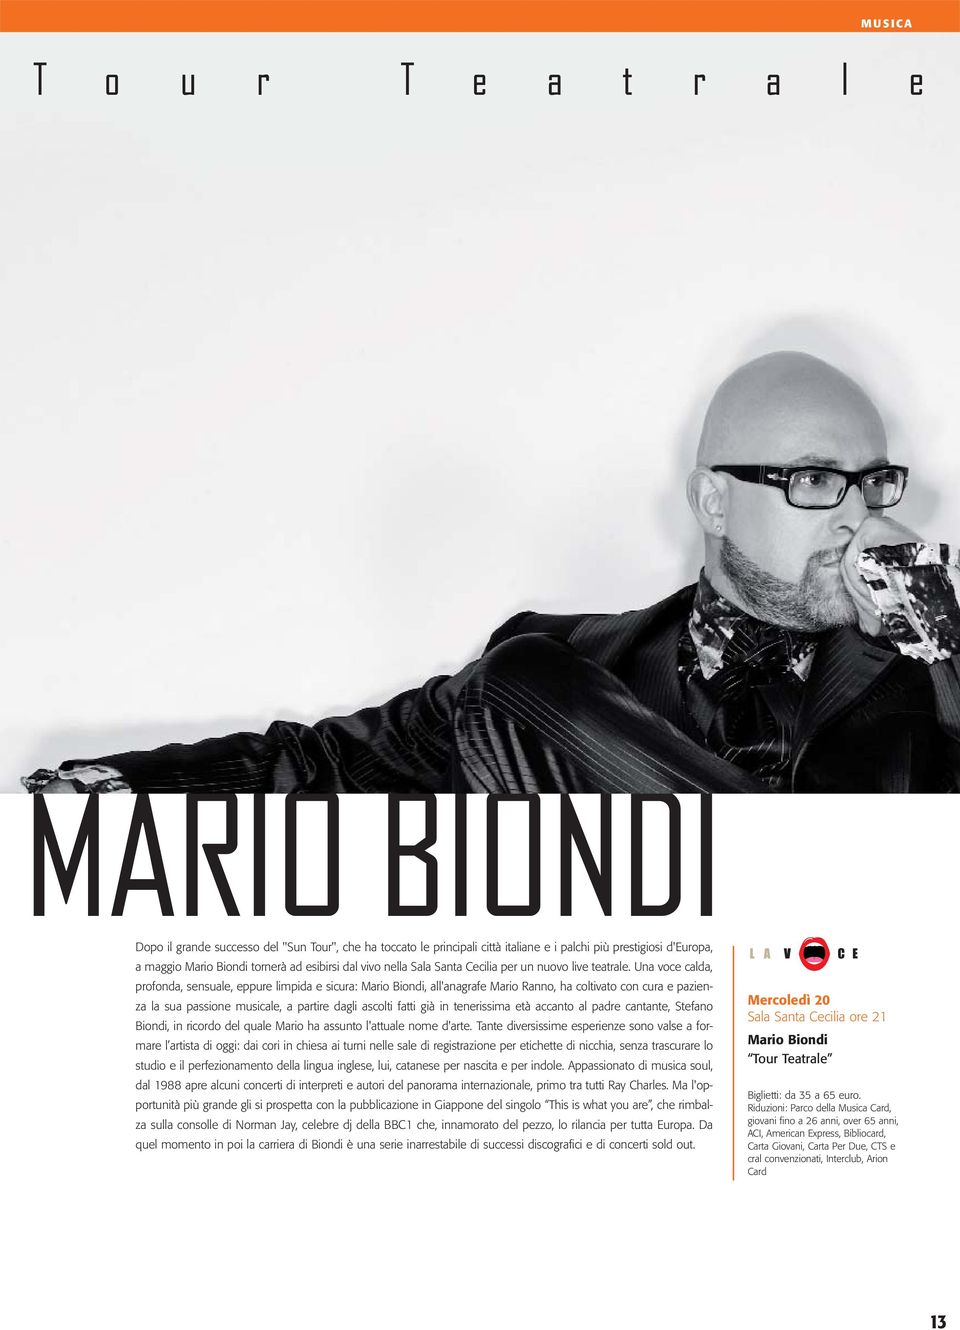 Una voce calda, profonda, sensuale, eppure limpida e sicura: Mario Biondi, all'anagrafe Mario Ranno, ha coltivato con cura e pazienza la sua passione musicale, a partire dagli ascolti fatti già in